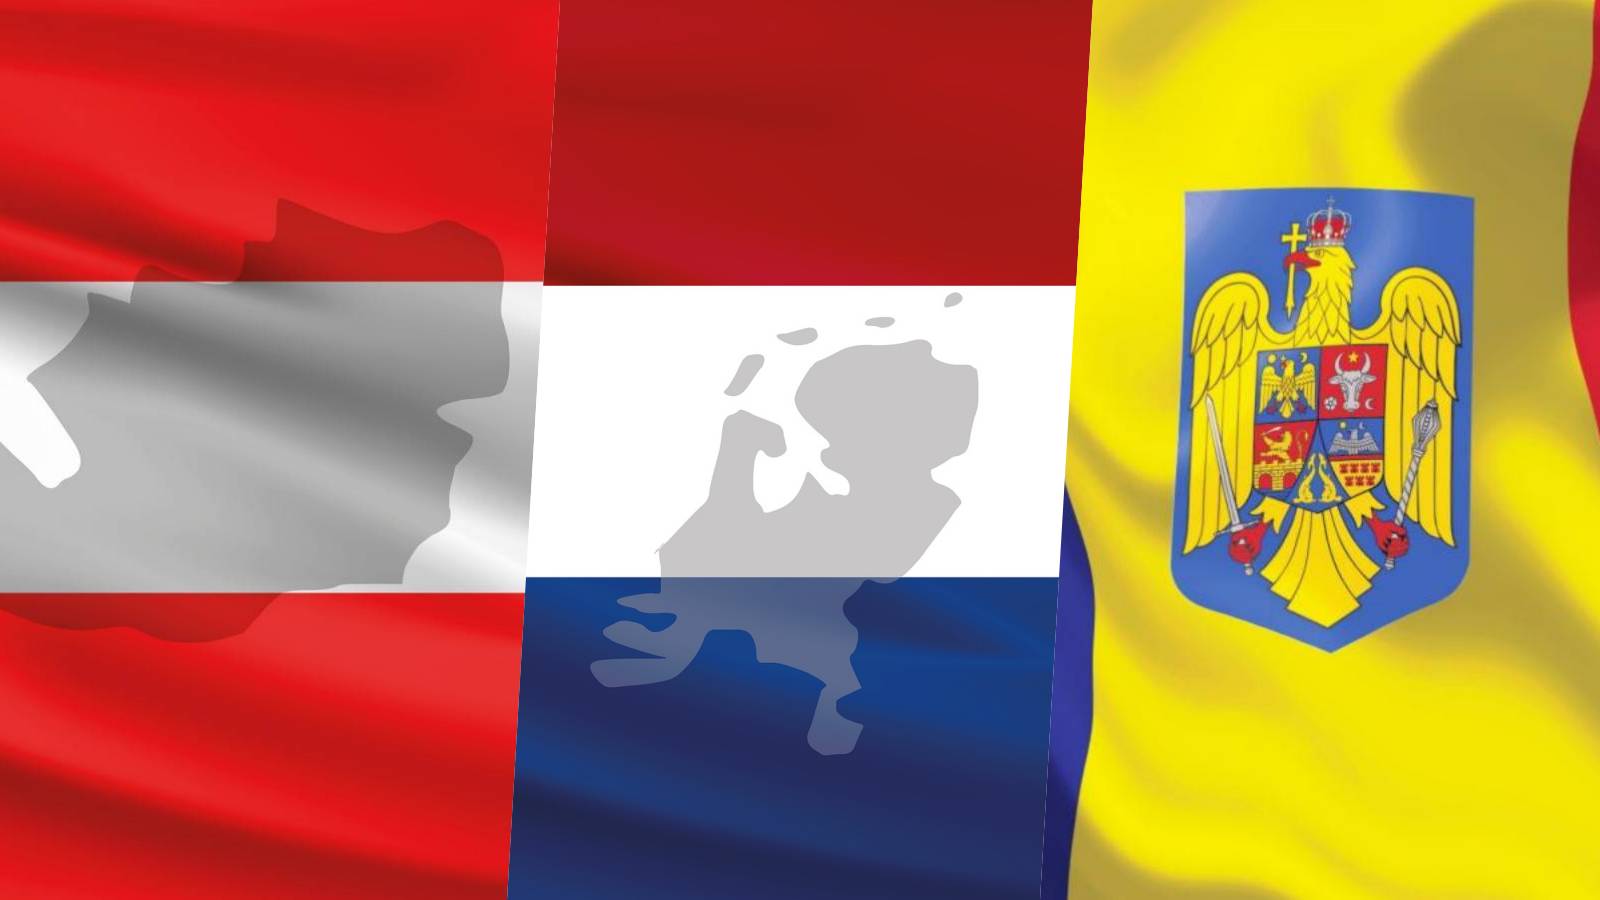 Austria Se requieren medidas radicales Holanda Karner Impacto GRANDE Schengen Rumanía